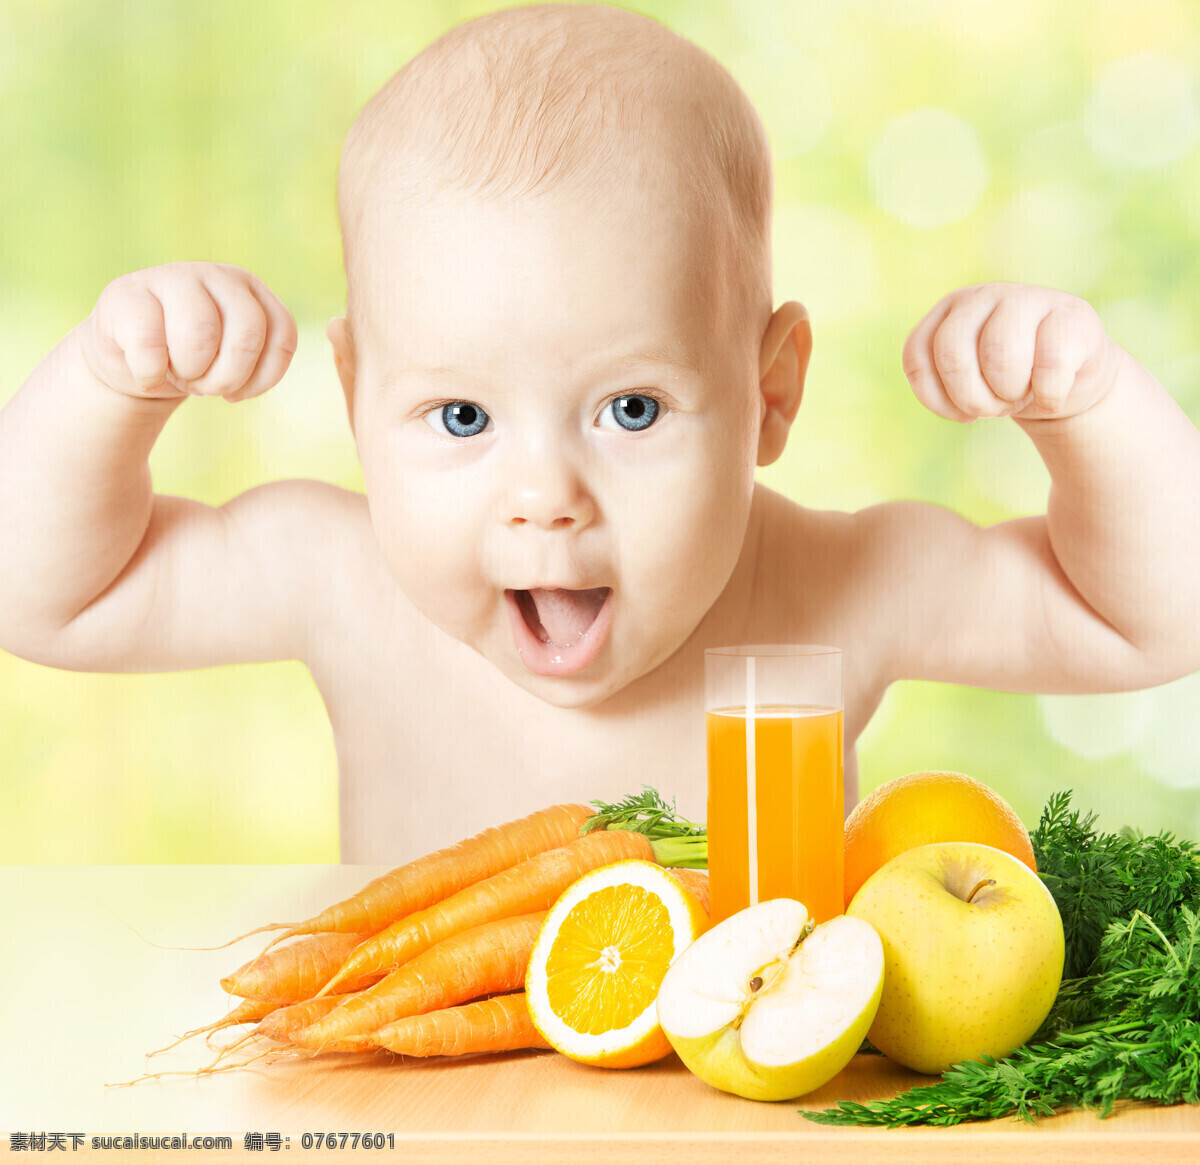 健康宝宝 蔬菜水果 果汁 胡萝卜 橙子 苹果 新鲜水果 新鲜蔬菜 蔬菜摄影 婴幼儿 婴儿 水果蔬菜 生活人物 人物图片